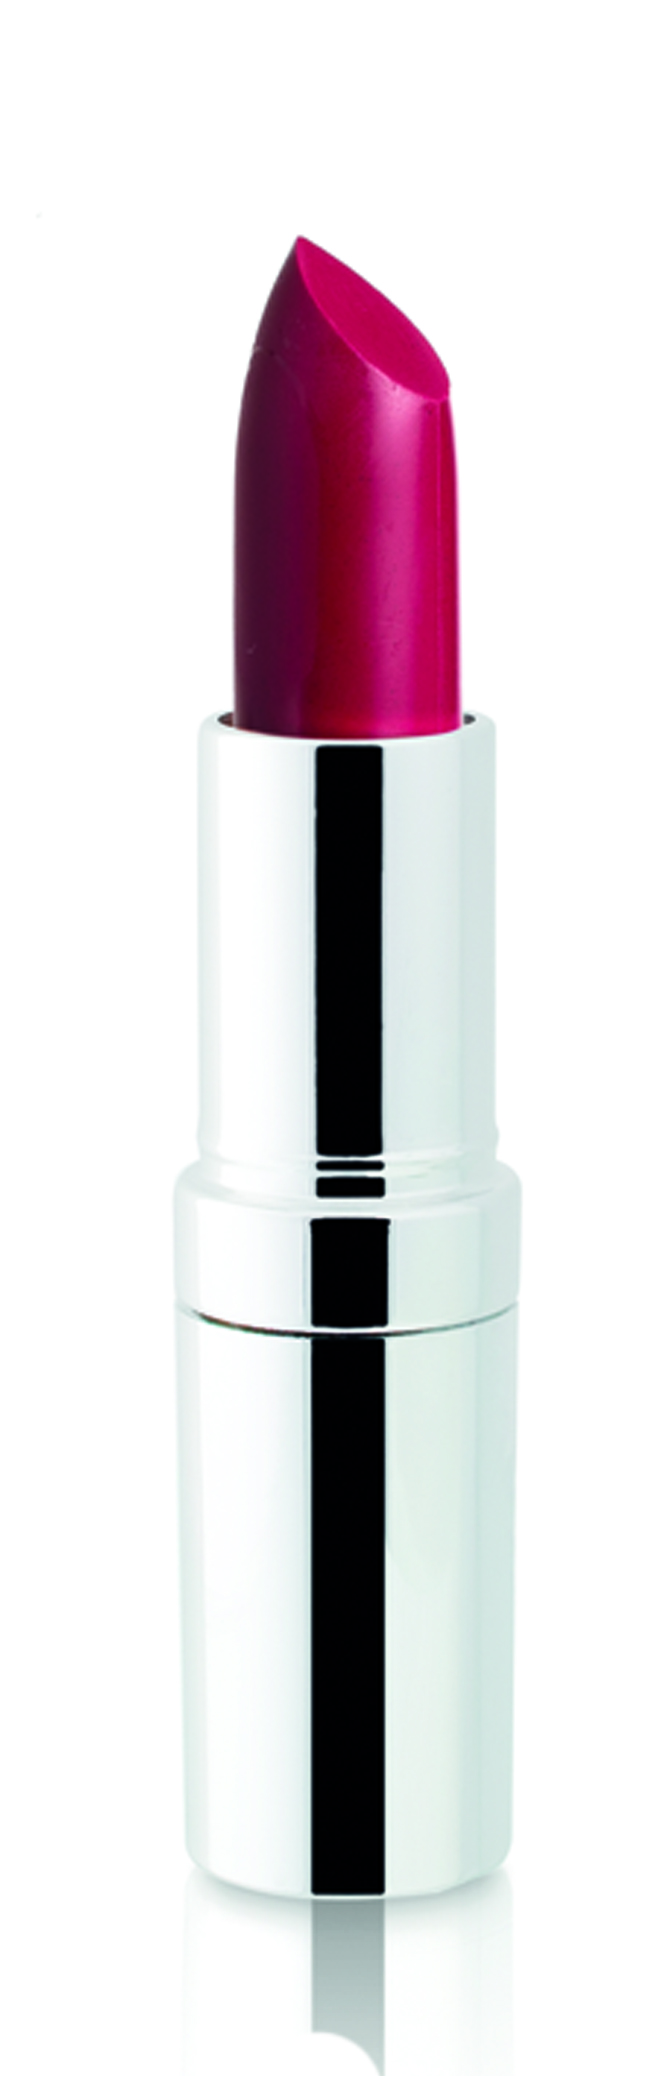 Устойчивая матовая губная помада SPF 15 Matte Lasting Lipstick, 11 бордо